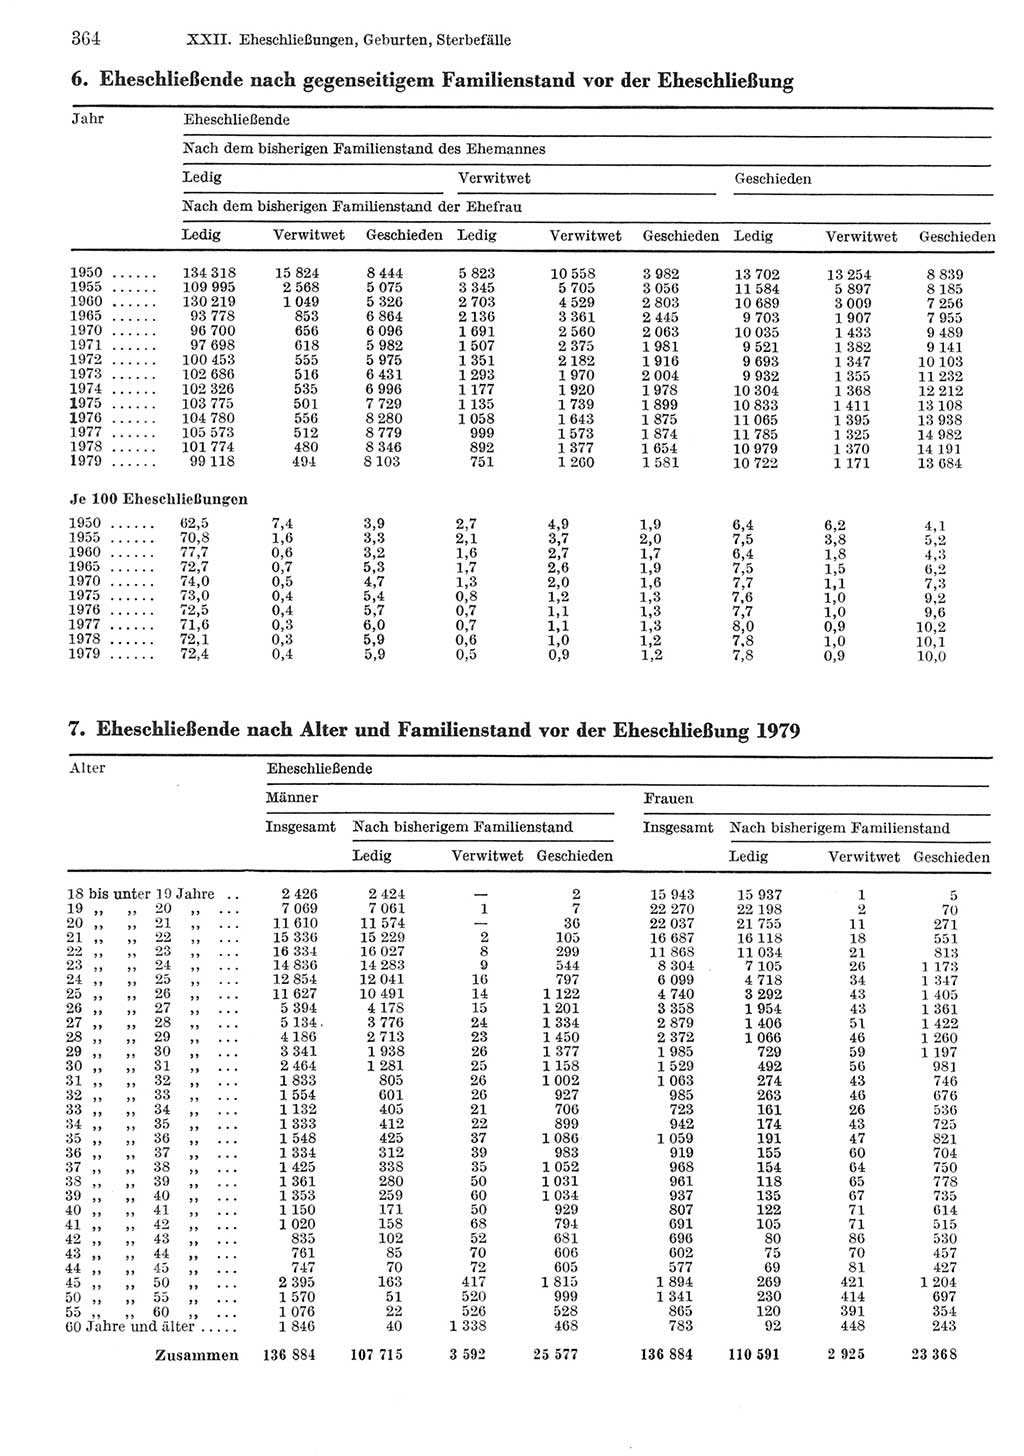 Statistisches Jahrbuch der Deutschen Demokratischen Republik (DDR) 1981, Seite 364 (Stat. Jb. DDR 1981, S. 364)